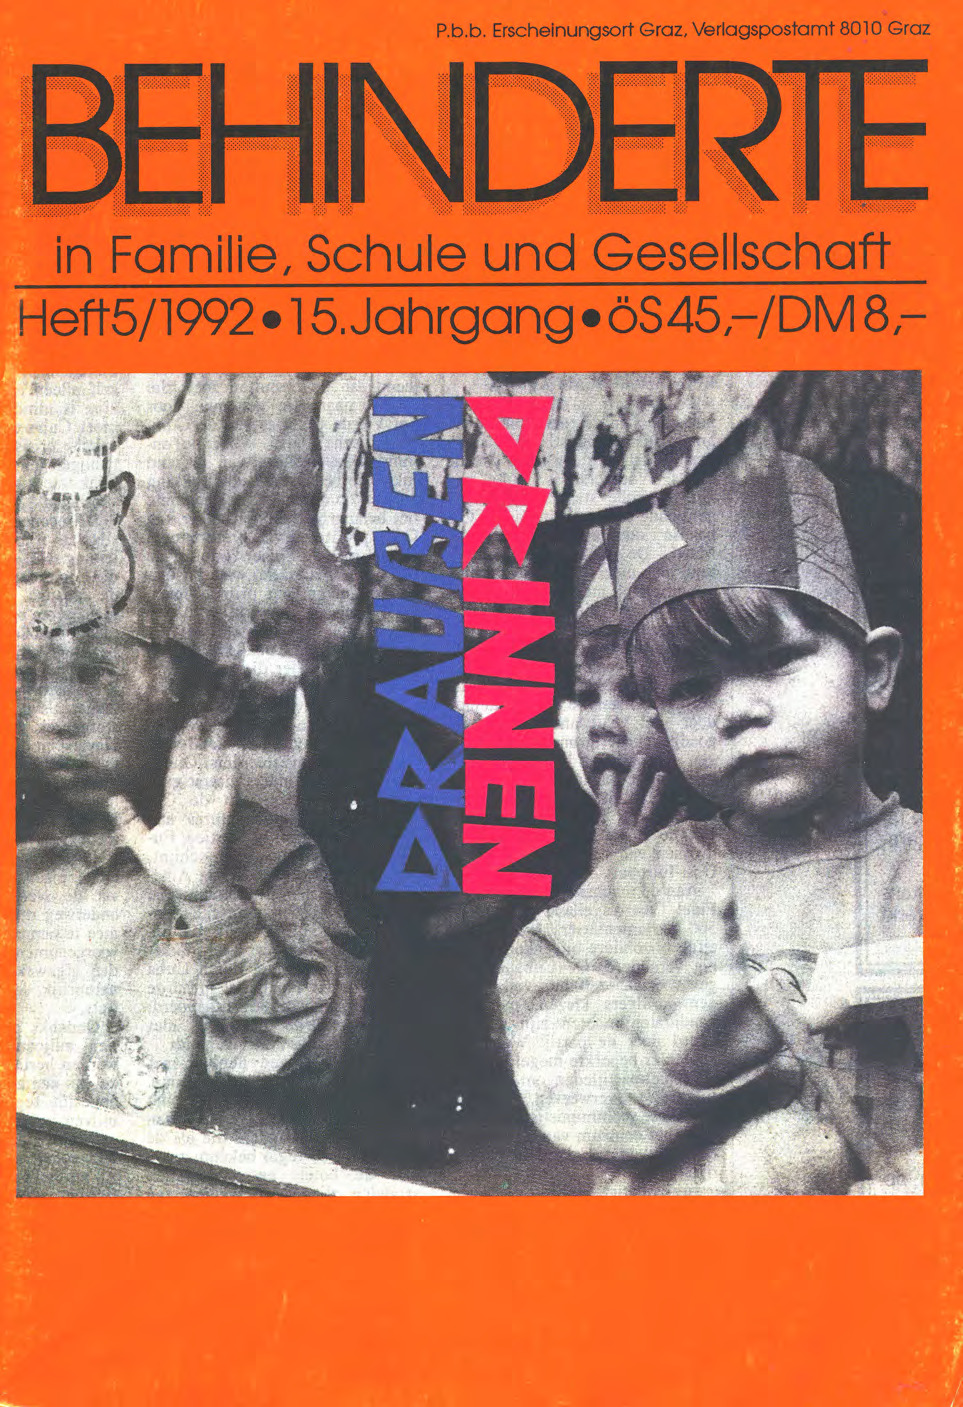 Titelbild der Zeitschrift BEHINDERTE MENSCHEN, Ausgabe 5/1992 "Draußen – Drinnen"